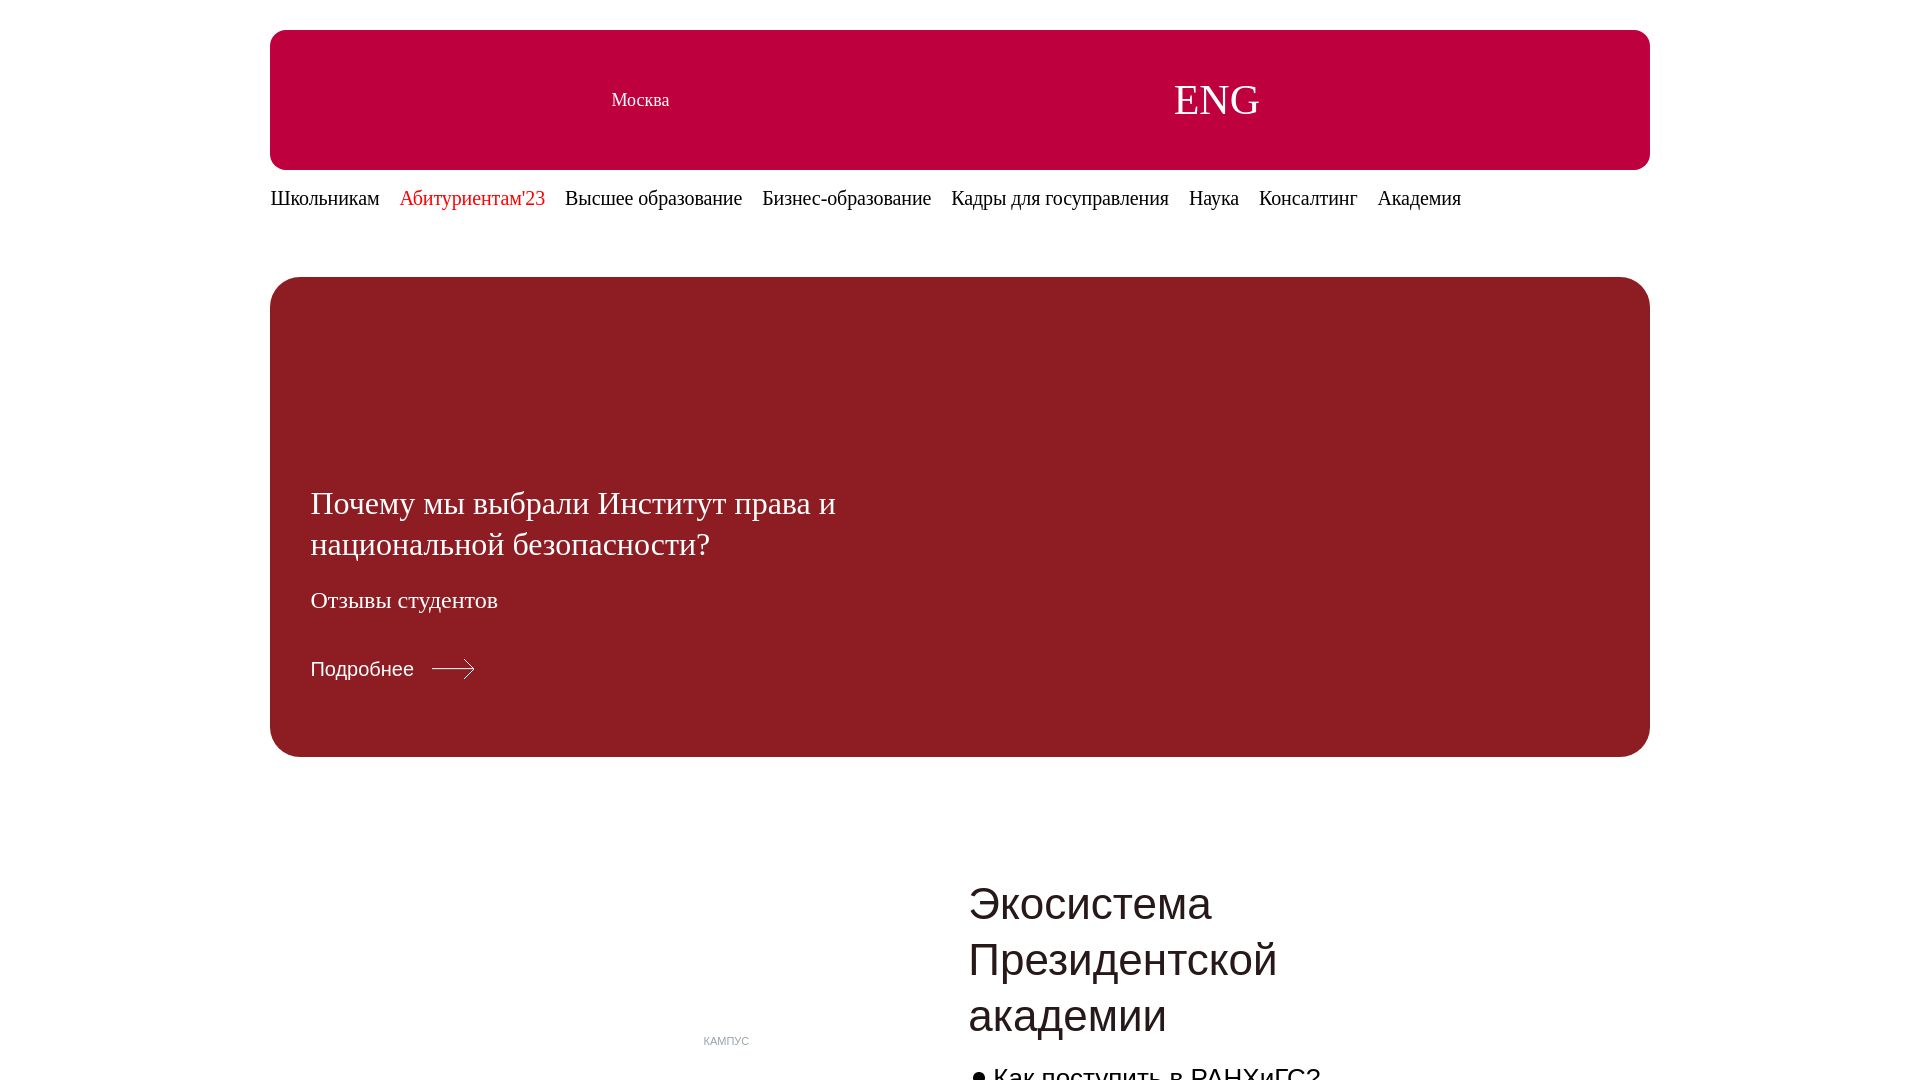 État du site web ranepa.ru est   EN LIGNE